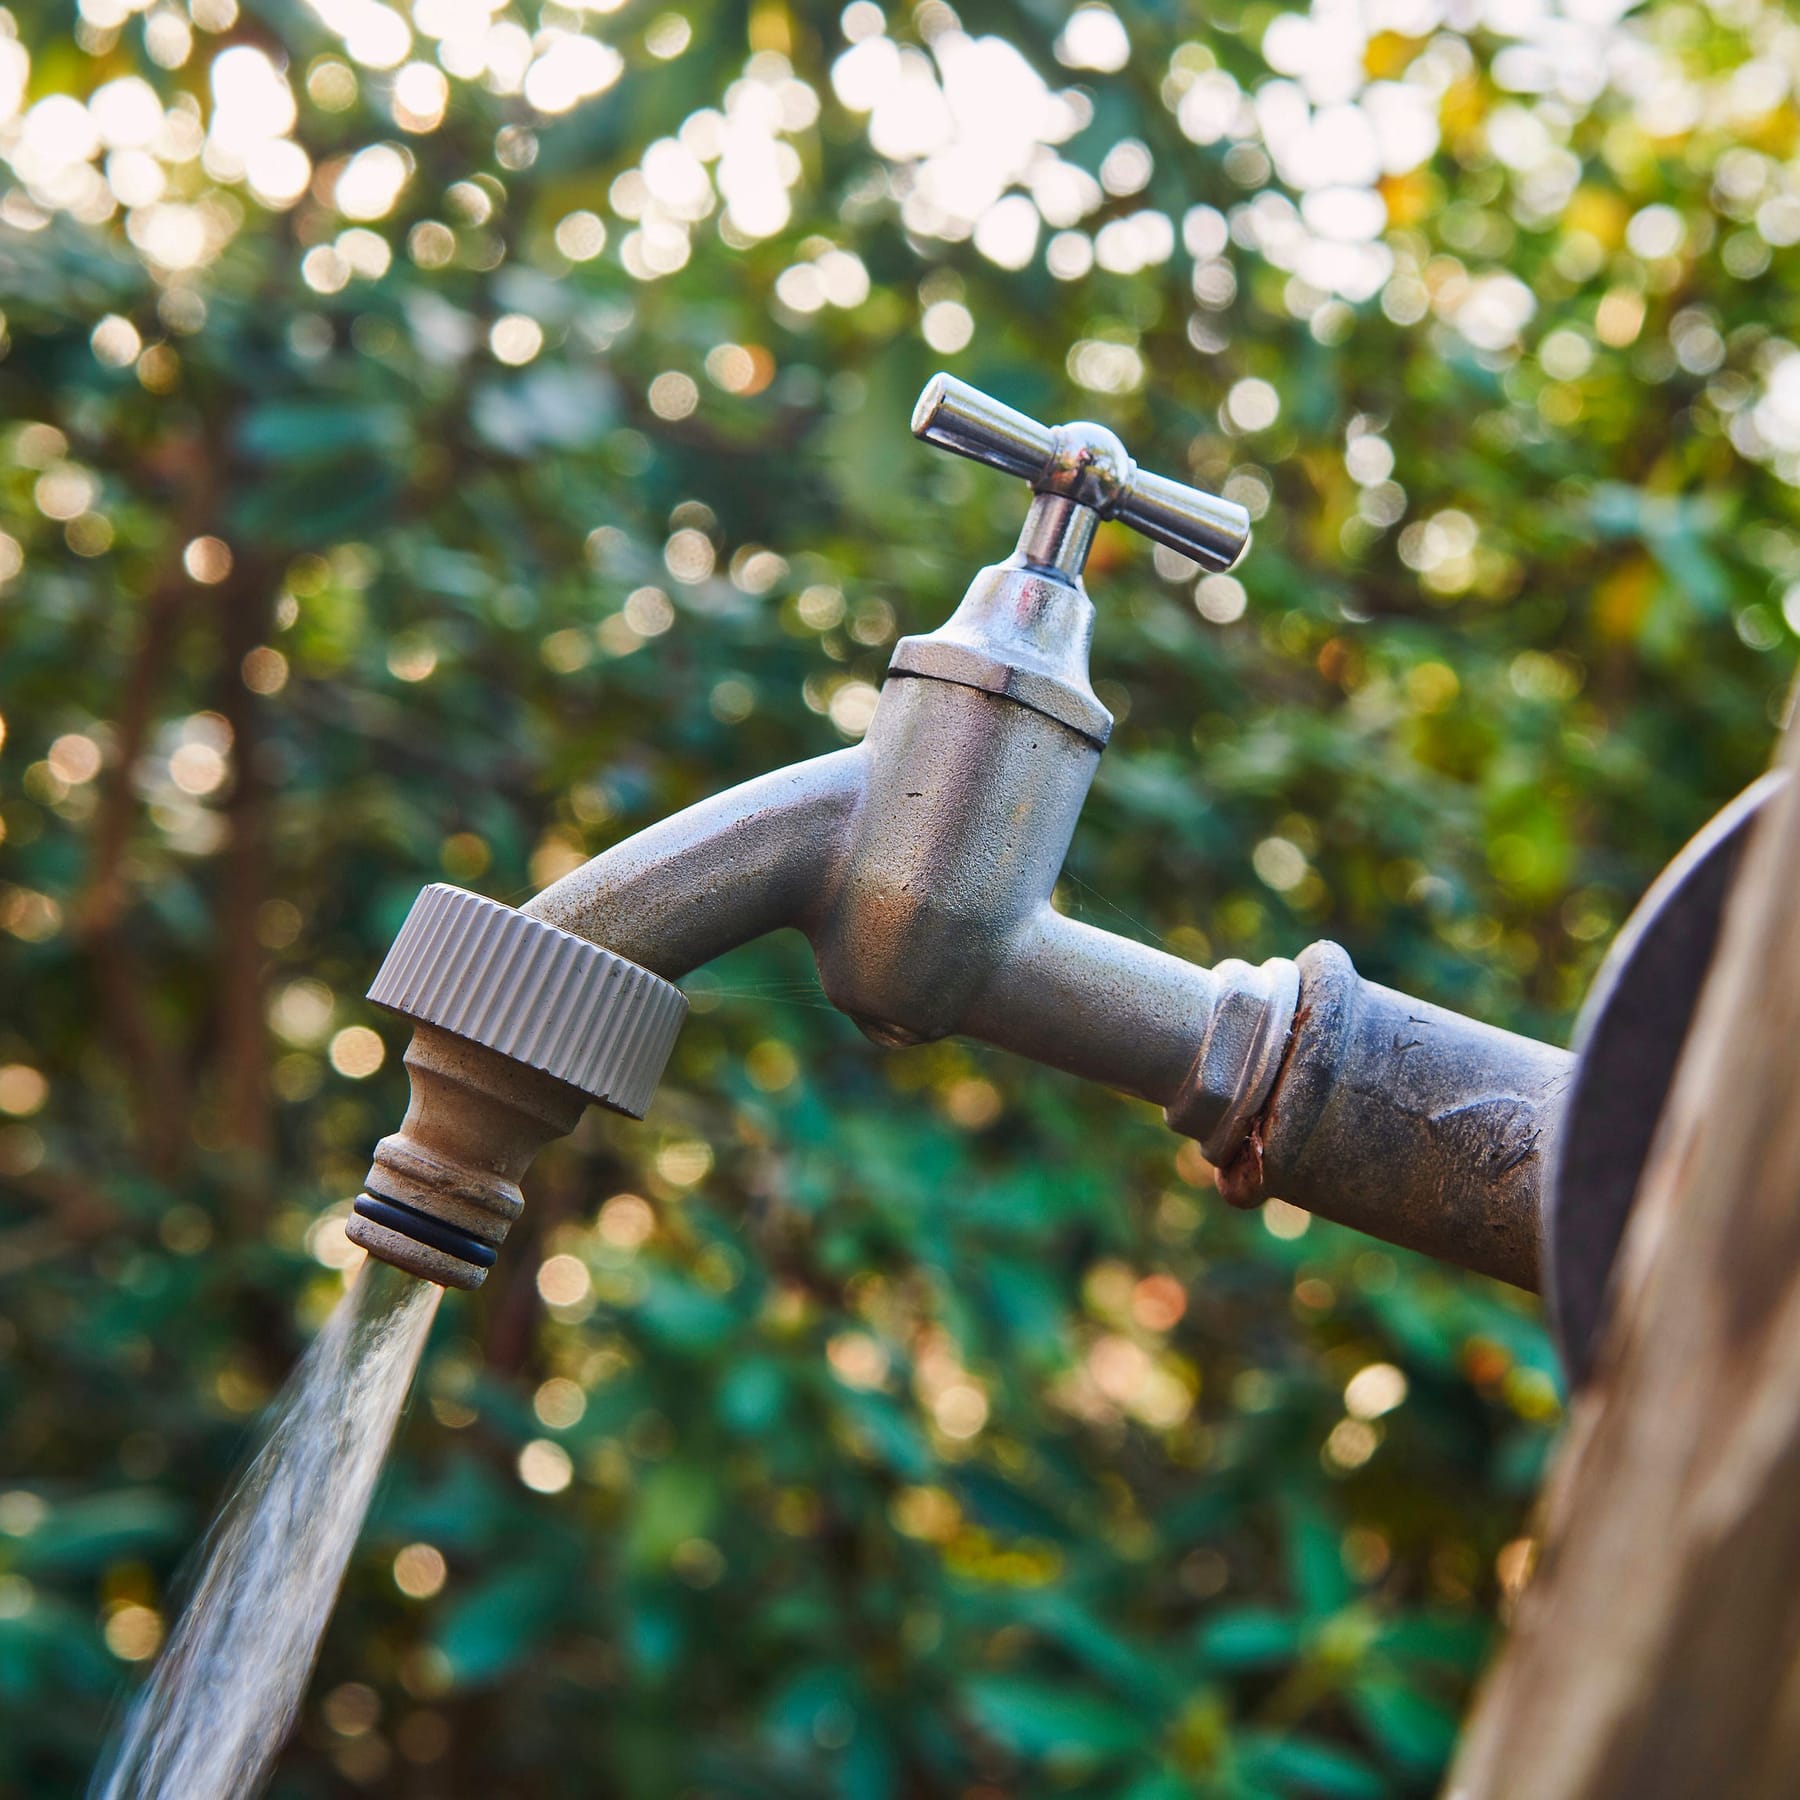 Wasserpreise könnten steigen: Unternehmensverband warnt